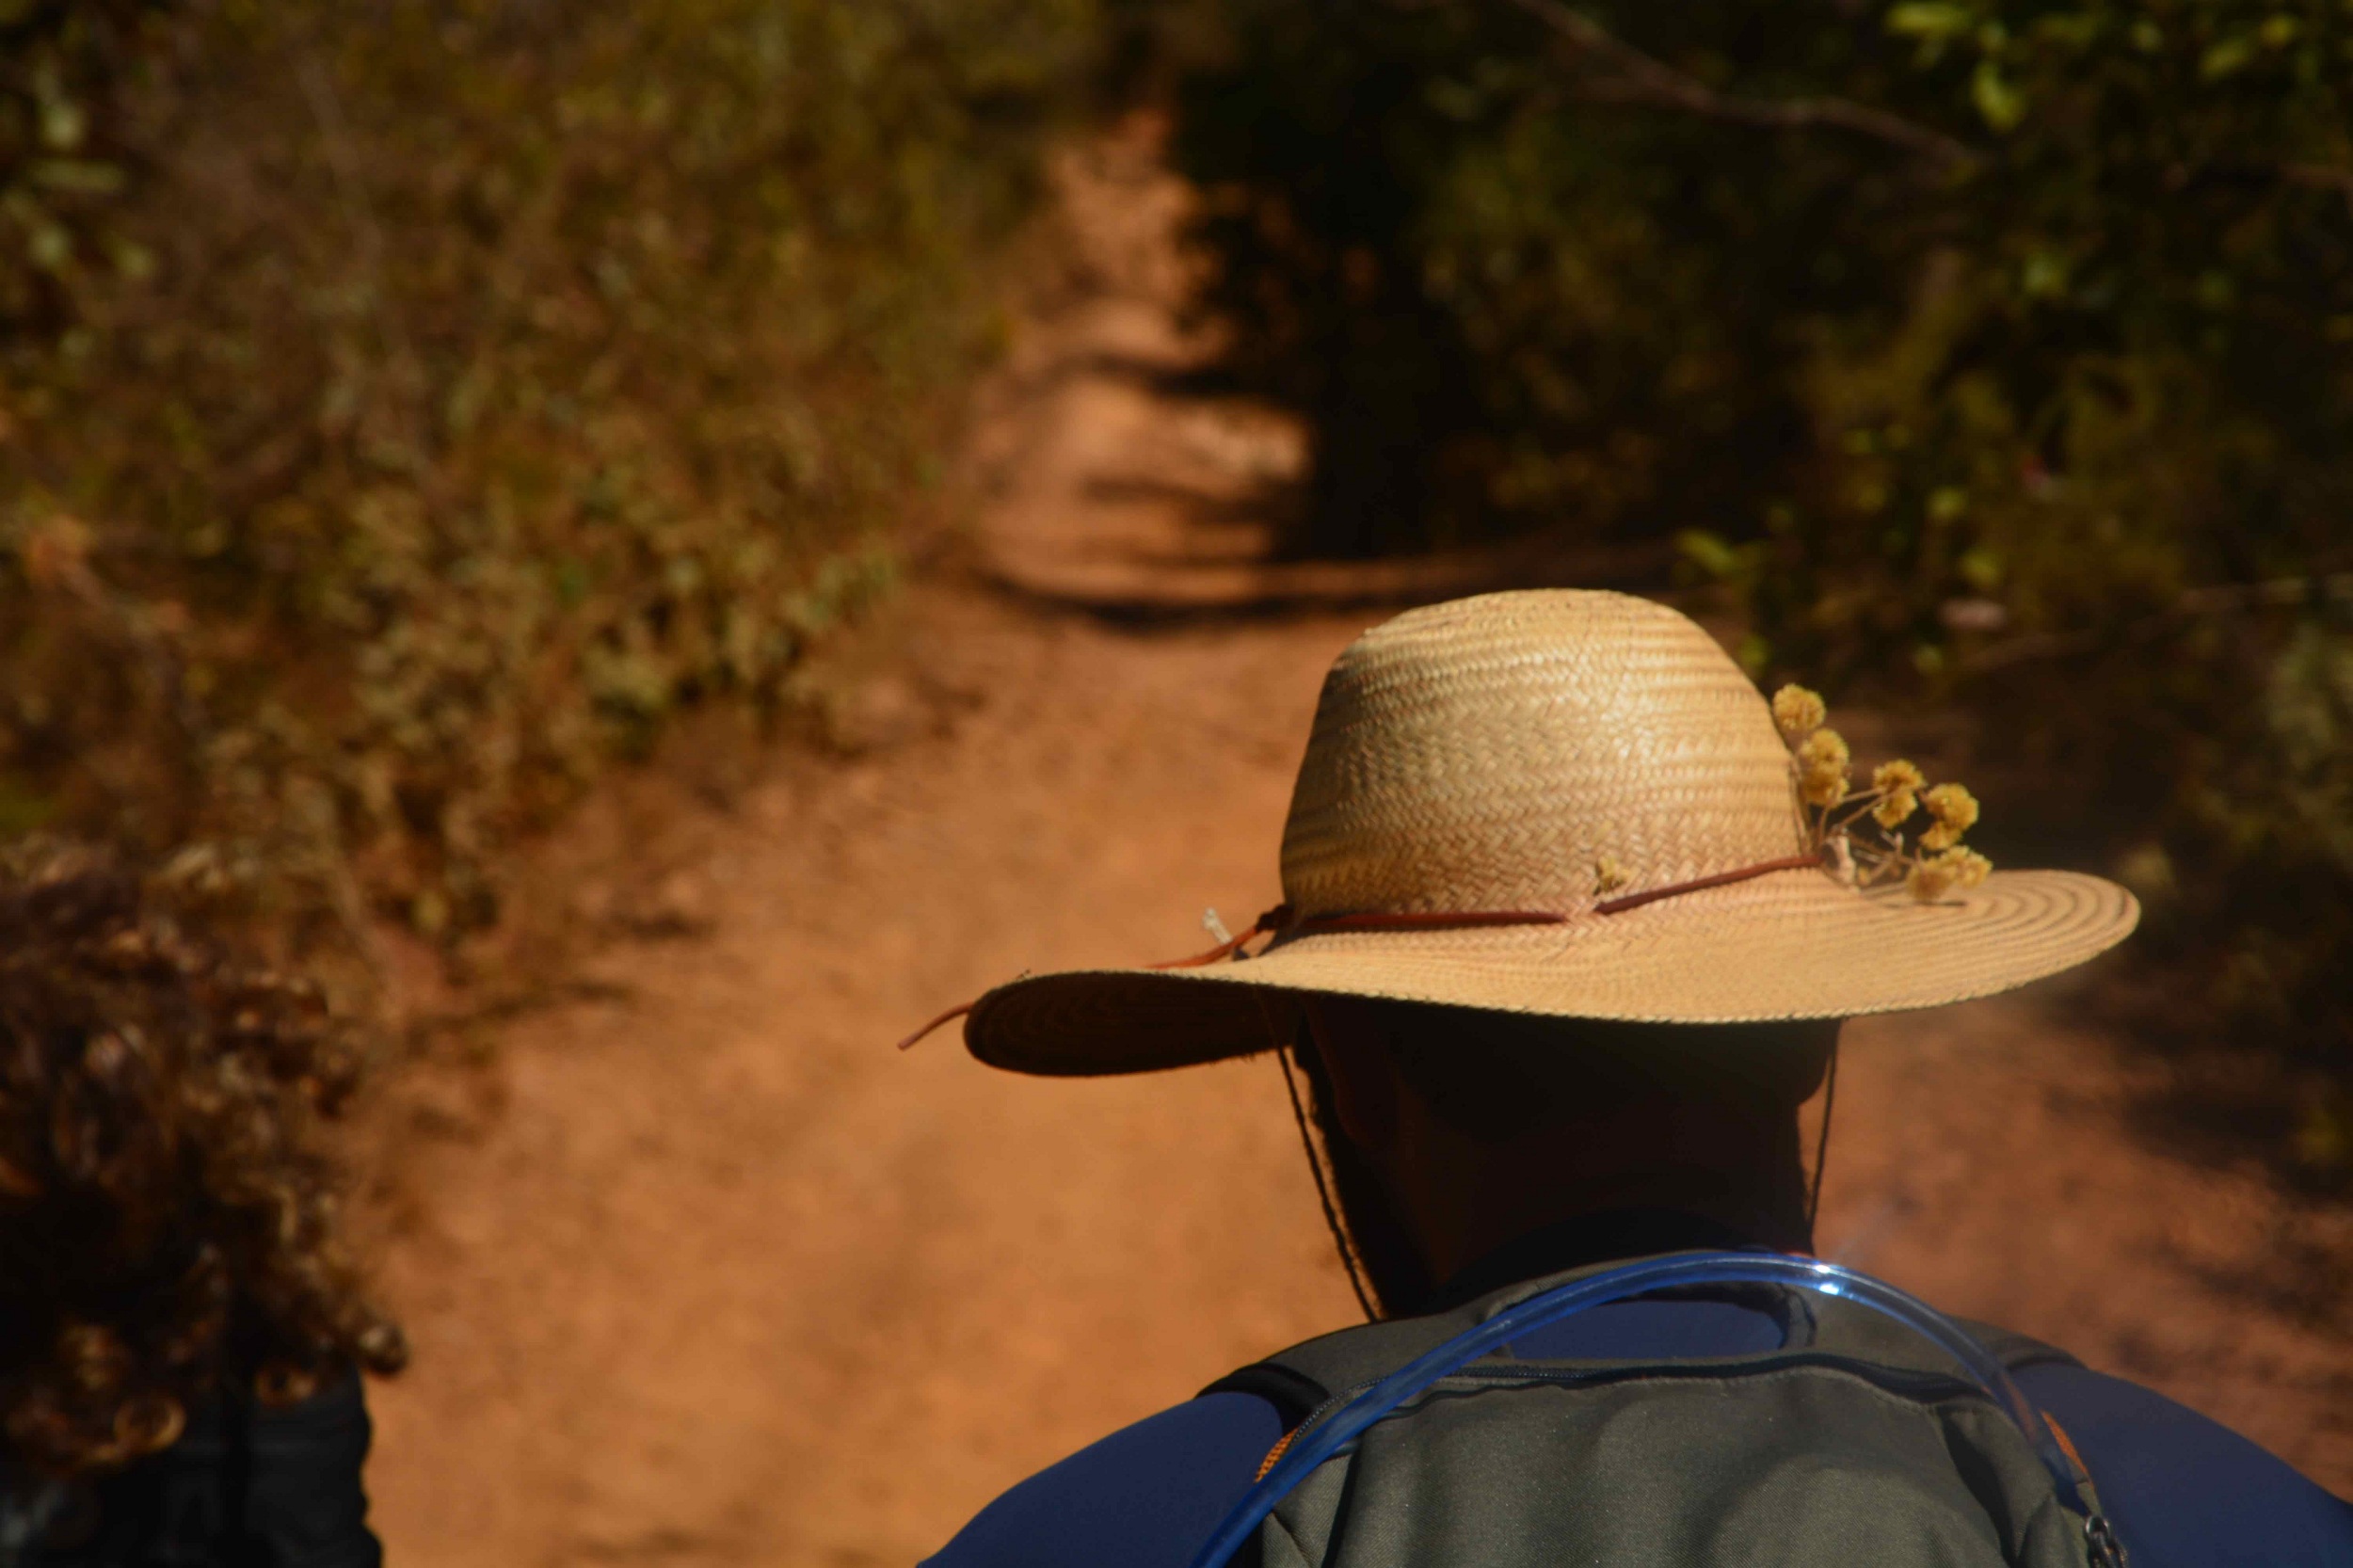 Fotografia em formato paisagem. Visto de costas e a partir dos ombros, um homem caminha por uma estrada de terra ensolarada. Ele usa um chapéu de palha enfeitado com pequenas flores amarelas de macela, blusa azul e está com uma mochila nas costas.